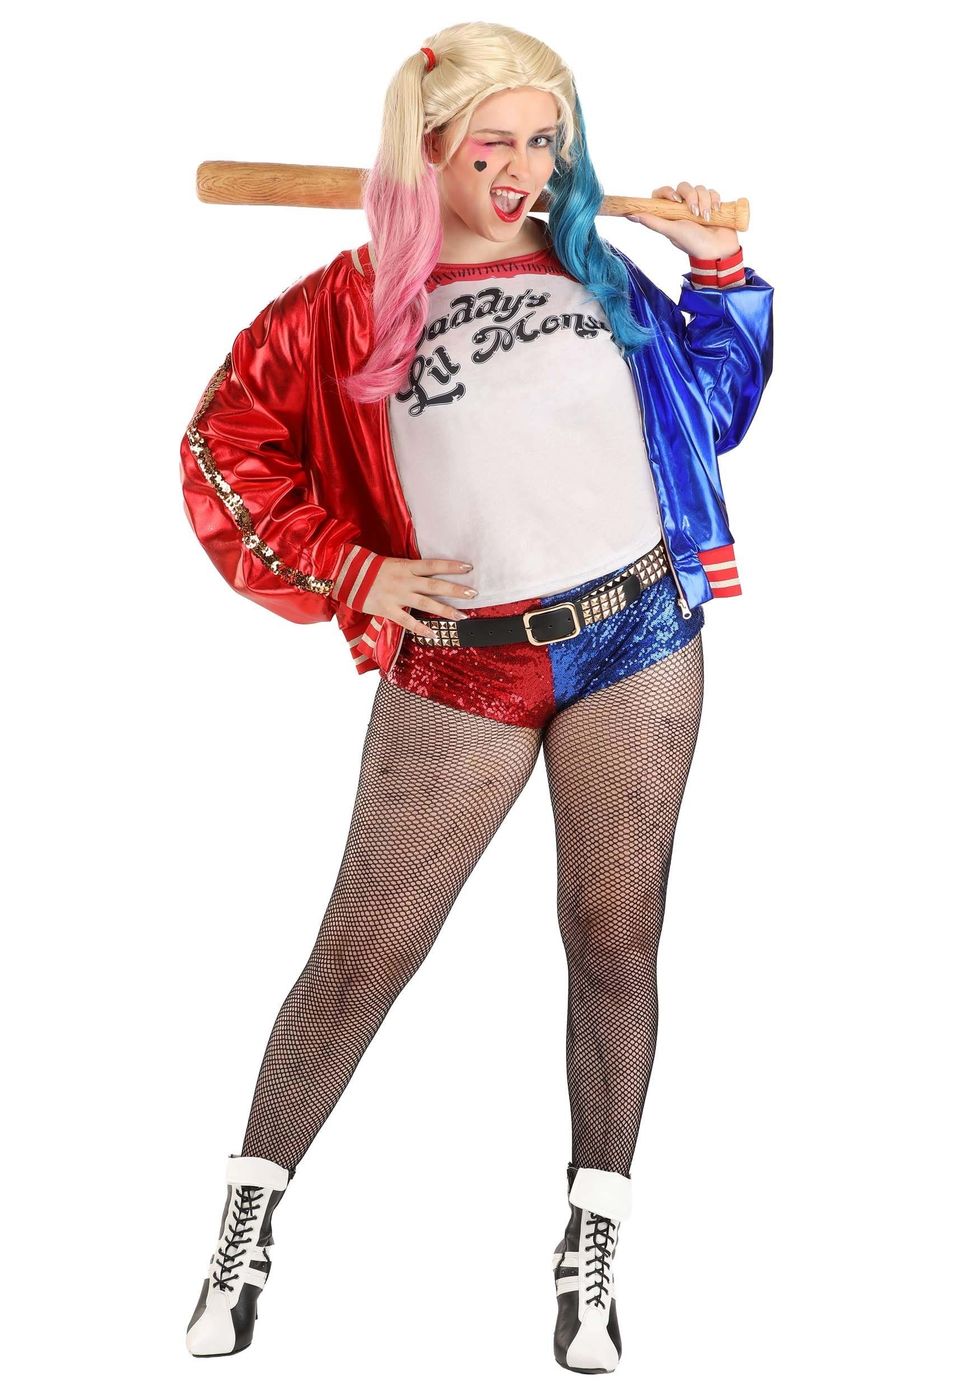 Harley Quinn costume